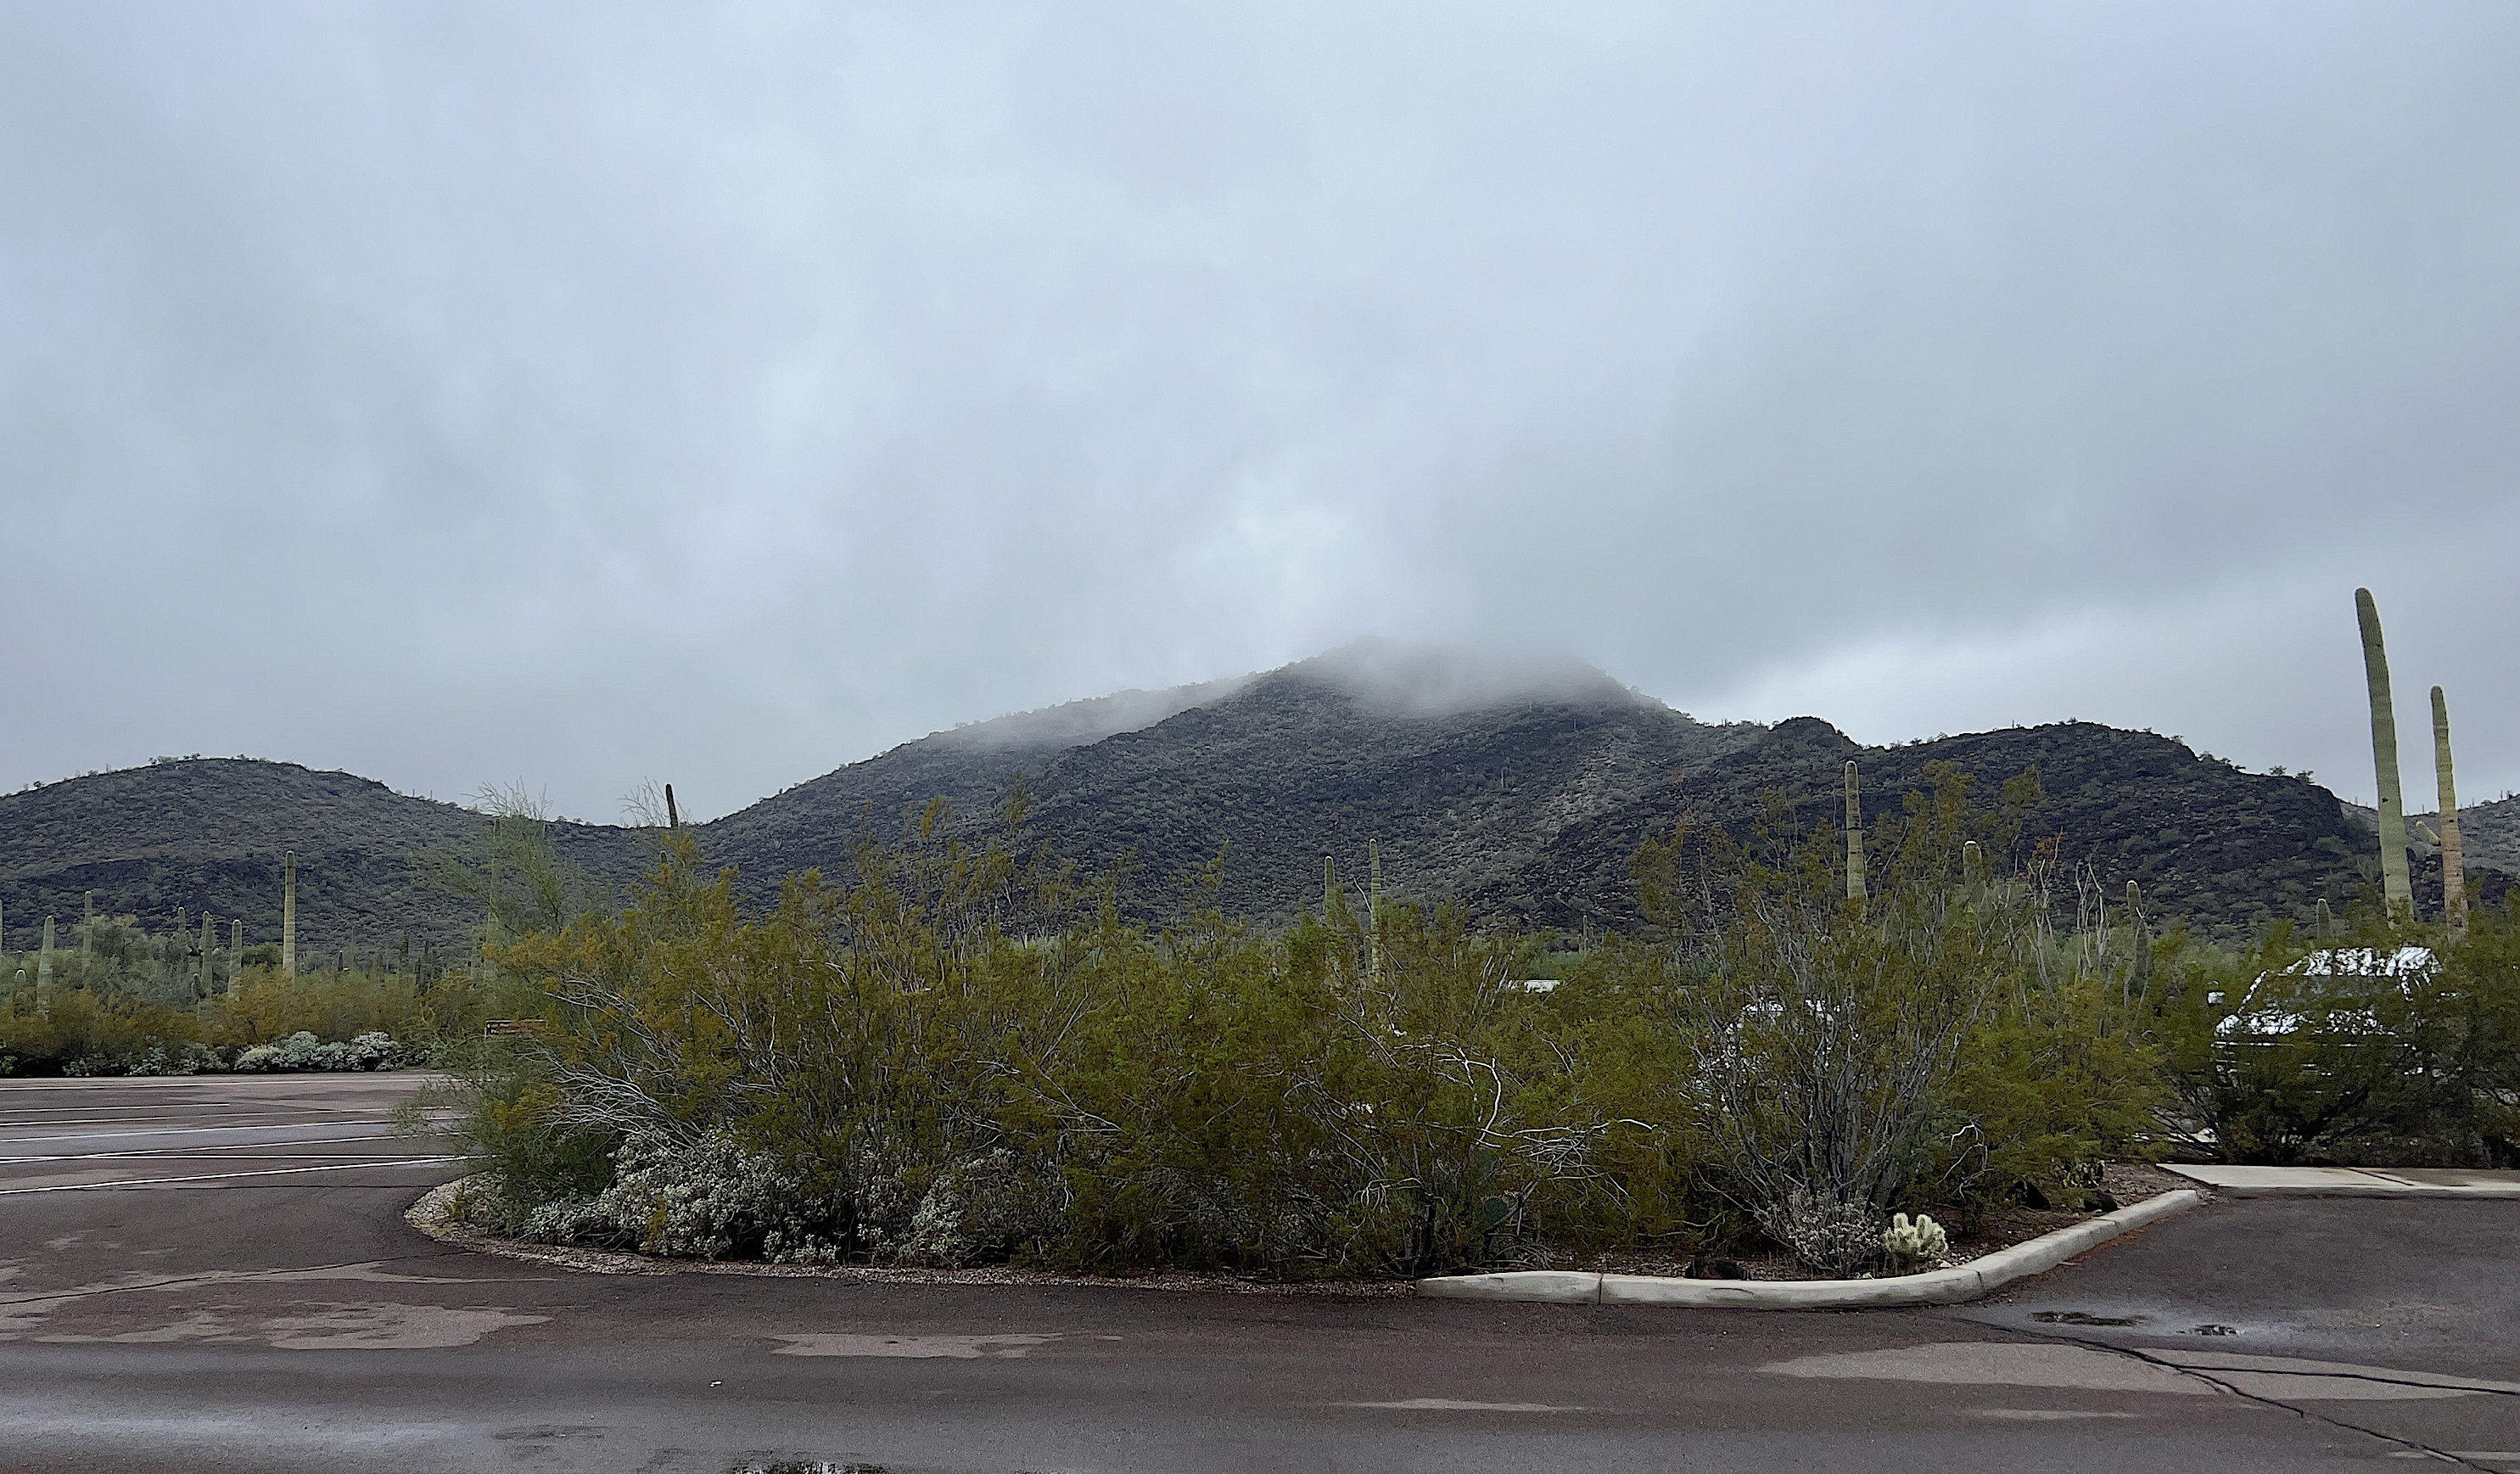 Blick auf die wolkenverhangenen Hügel beim Visitor-Center des Organ Pipe Cactus National Monument. Im Vordergrund ein paar Saguaro-Kakteen.